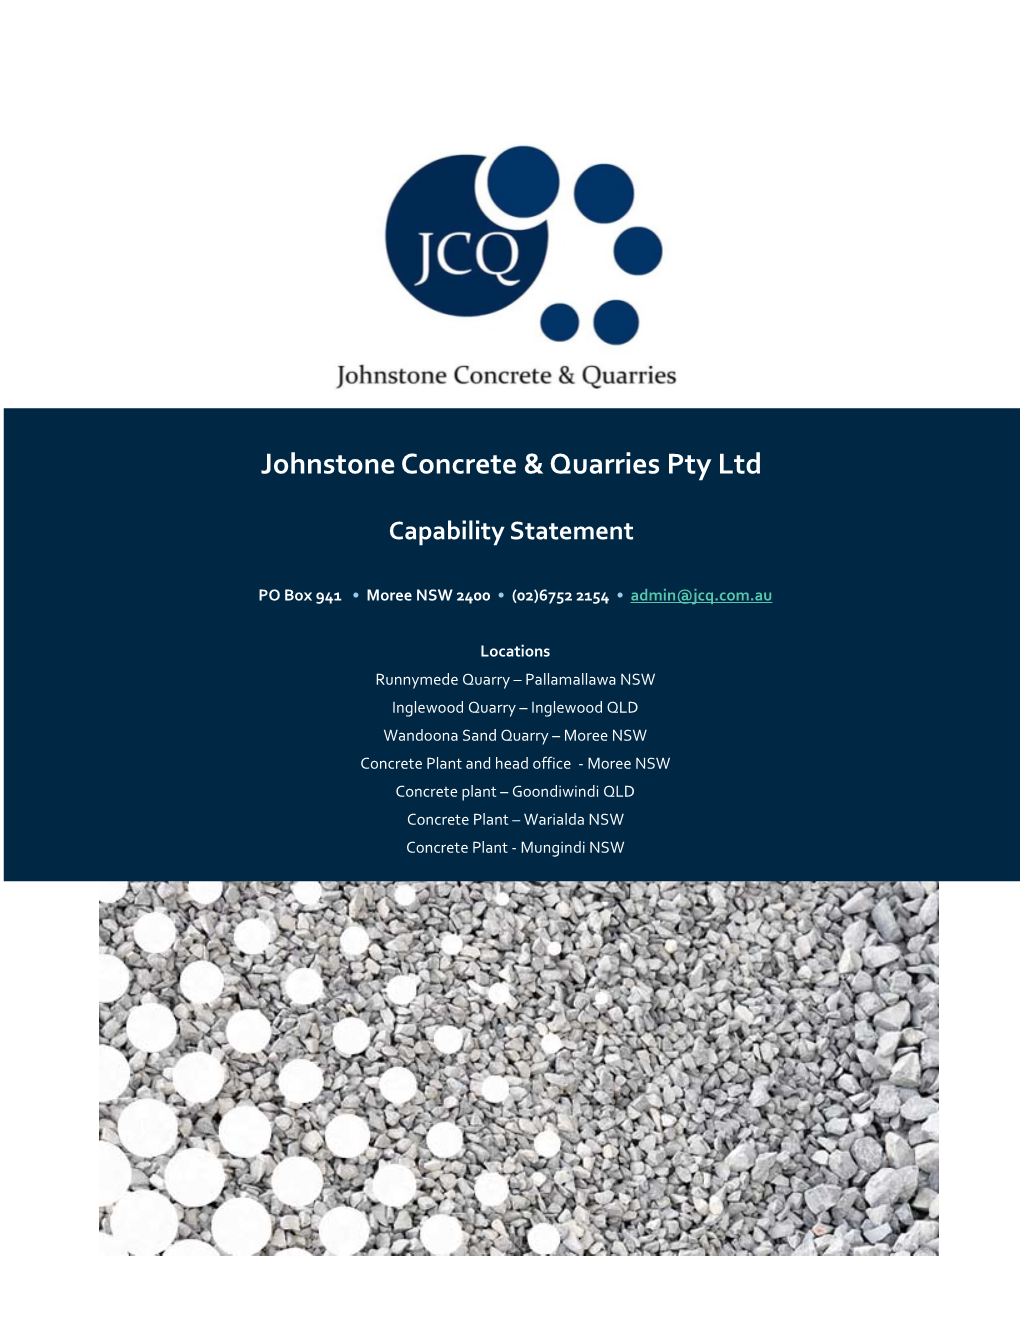 Johnstone Concrete & Quarries Pty